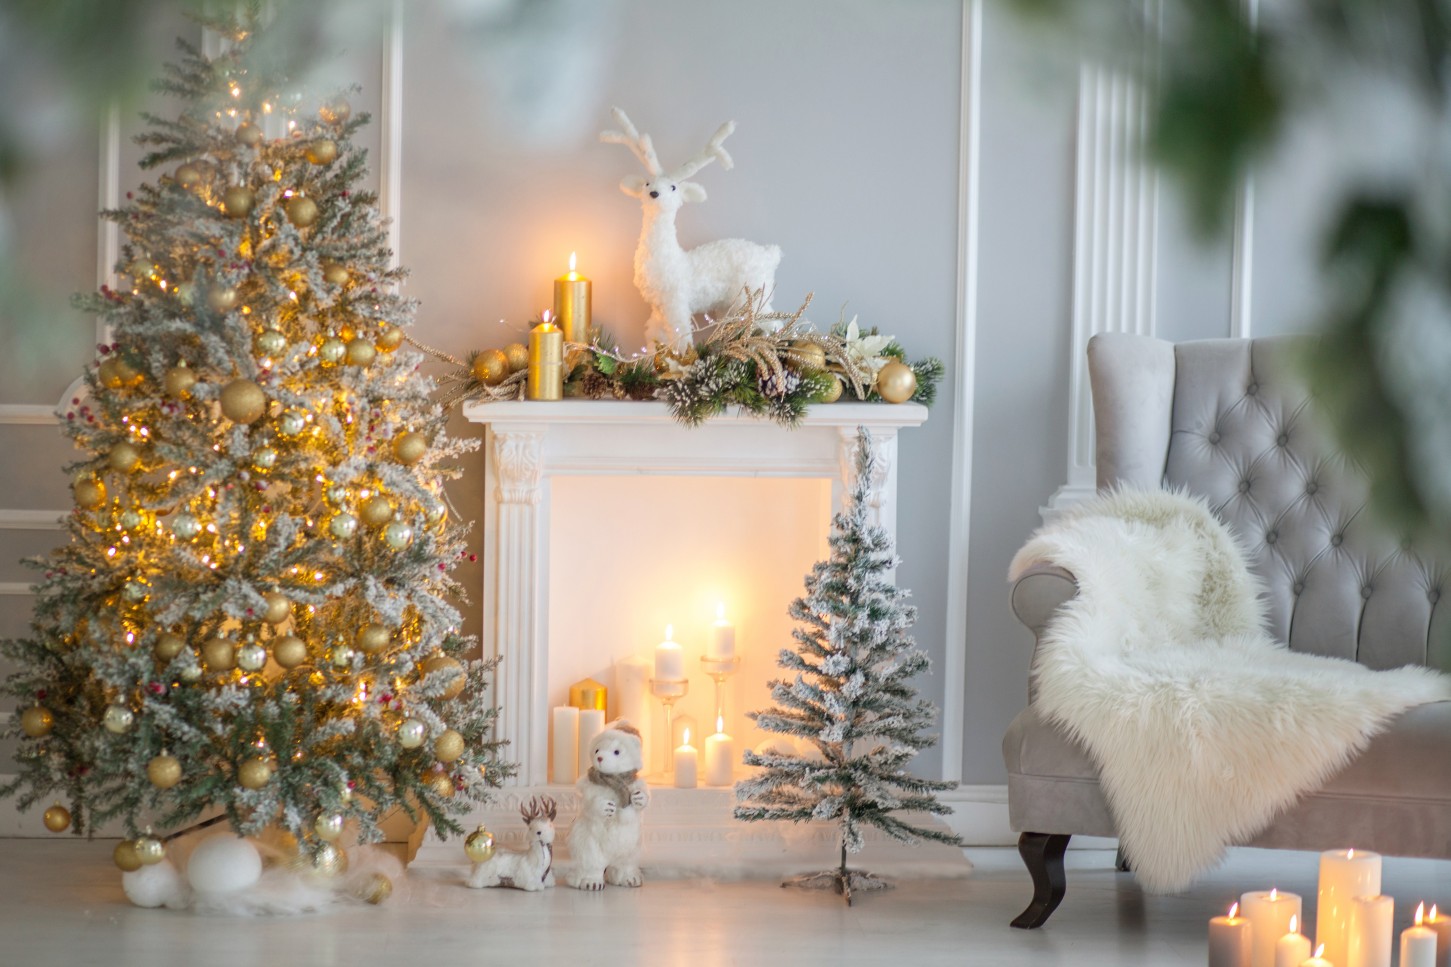 Ziemassvētku fotosesija ar tematiskām dekorācijām (1 stunda)